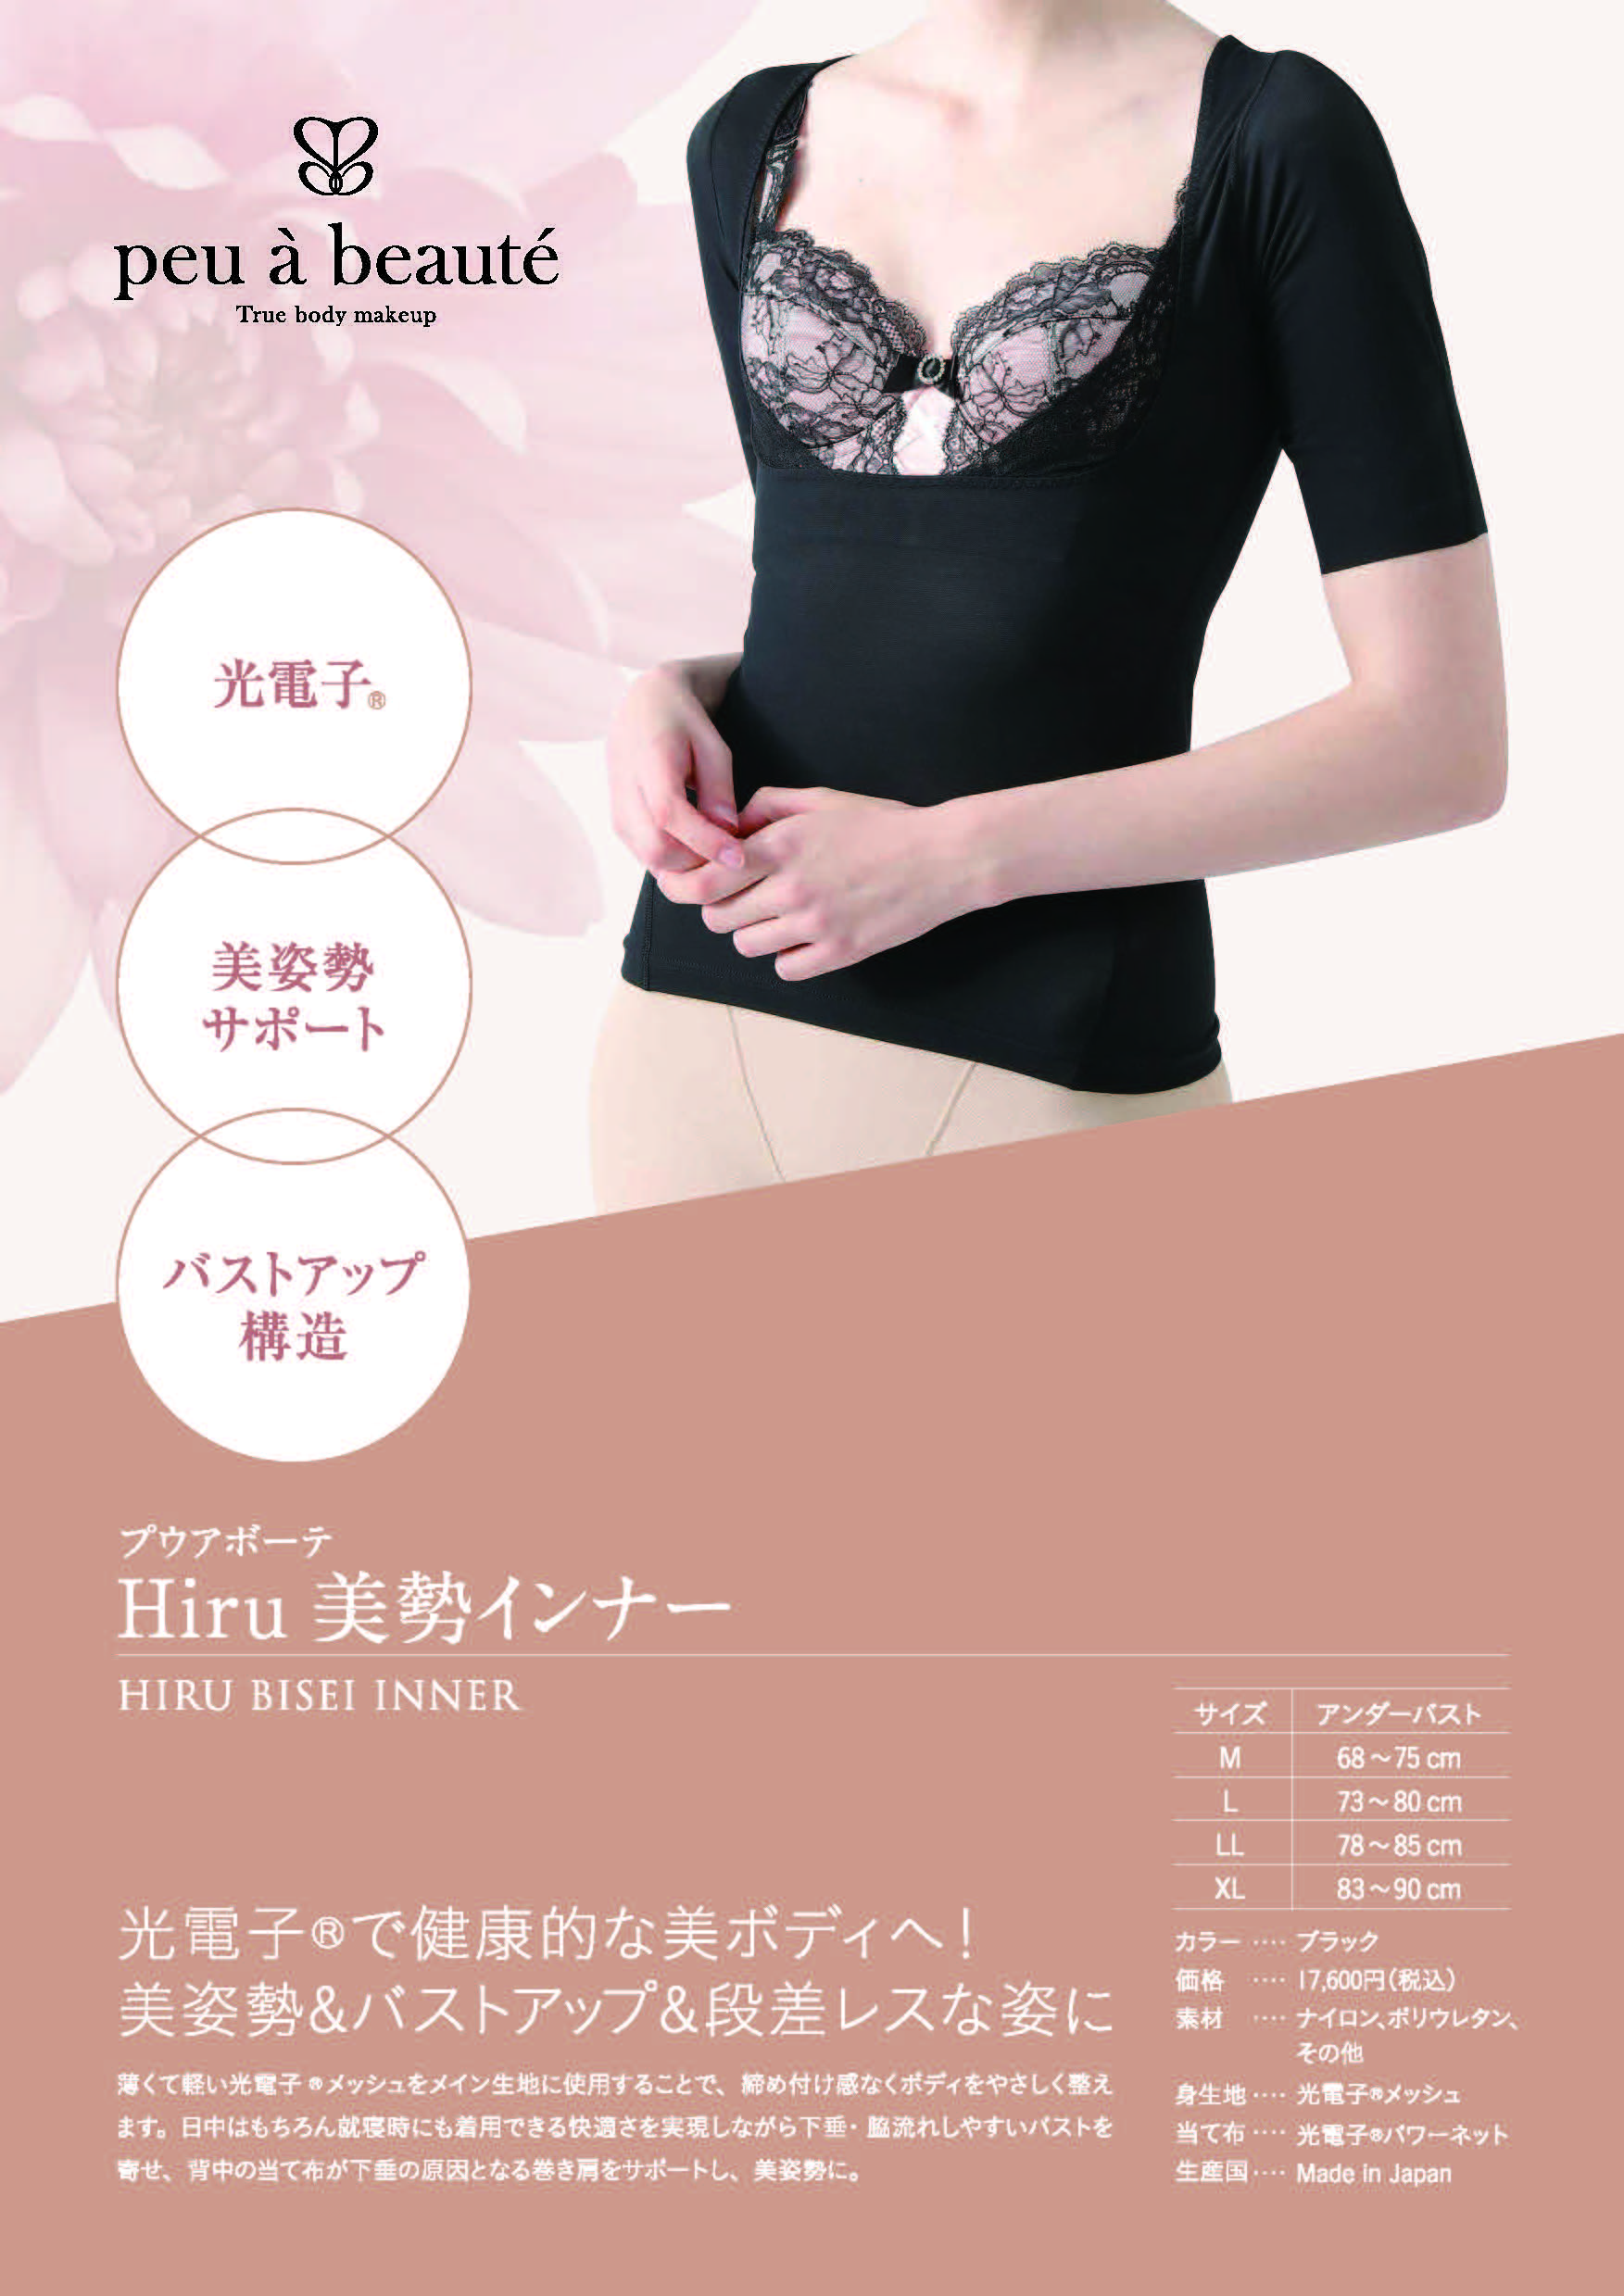 Hiru 美勢インナー《プウアボーテ》 ｜ レイテノール通販サイト